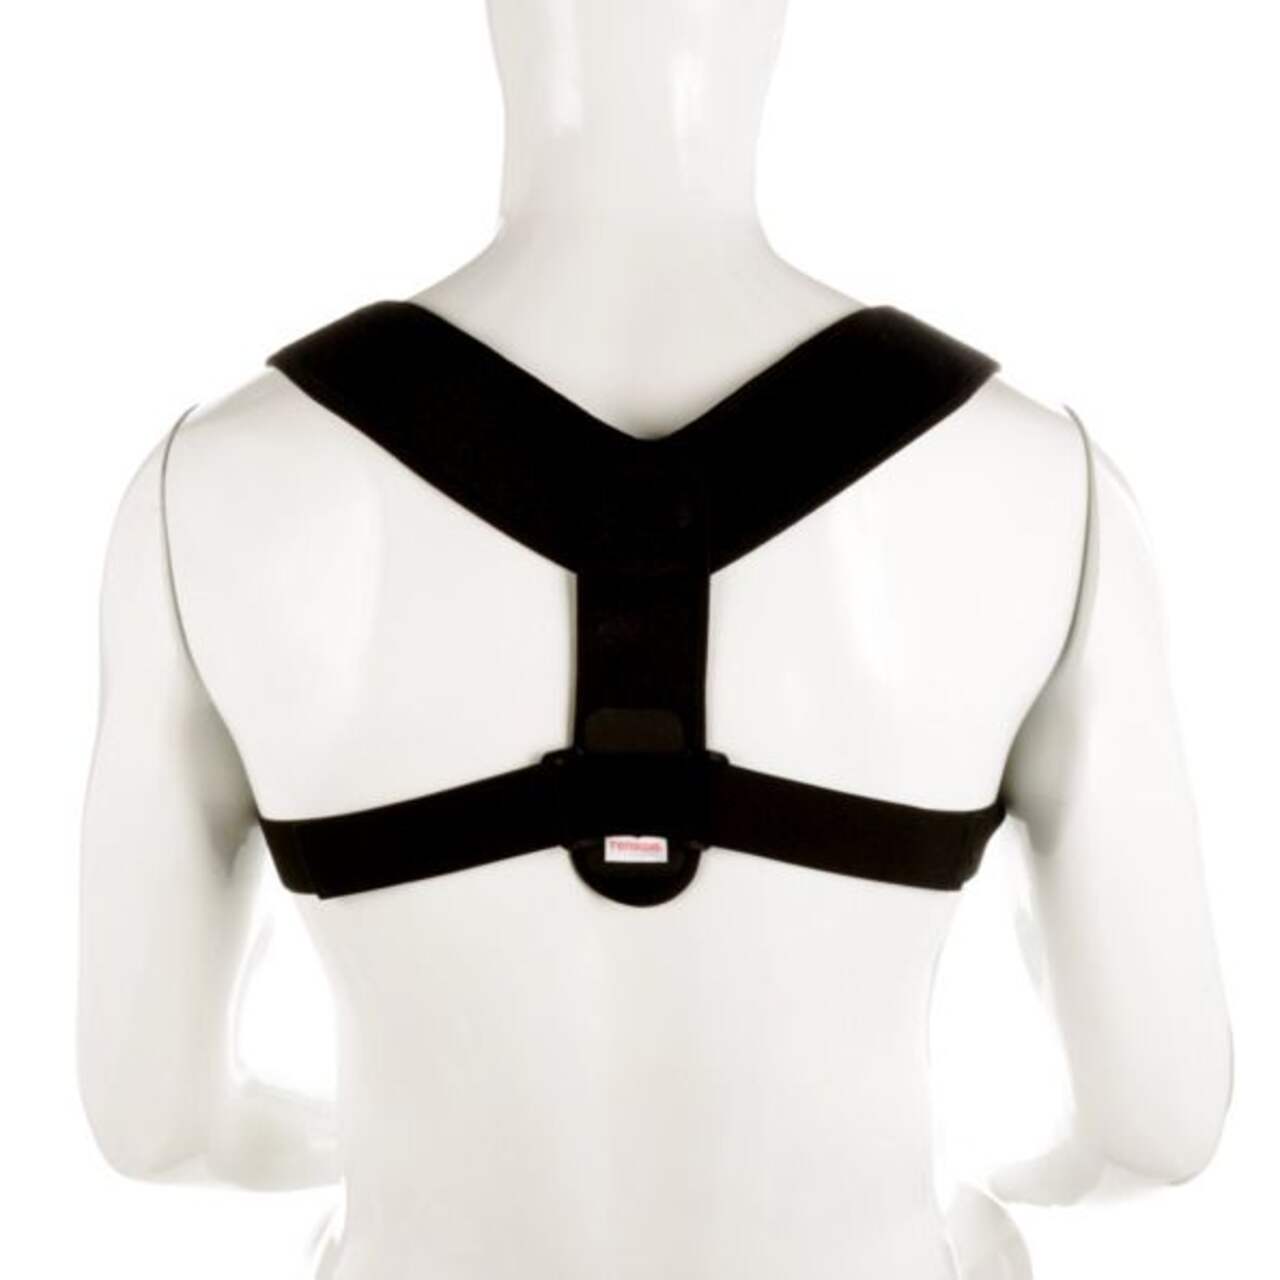 Tensor Posture Corrector Adjustable Back Support, Black, One Size